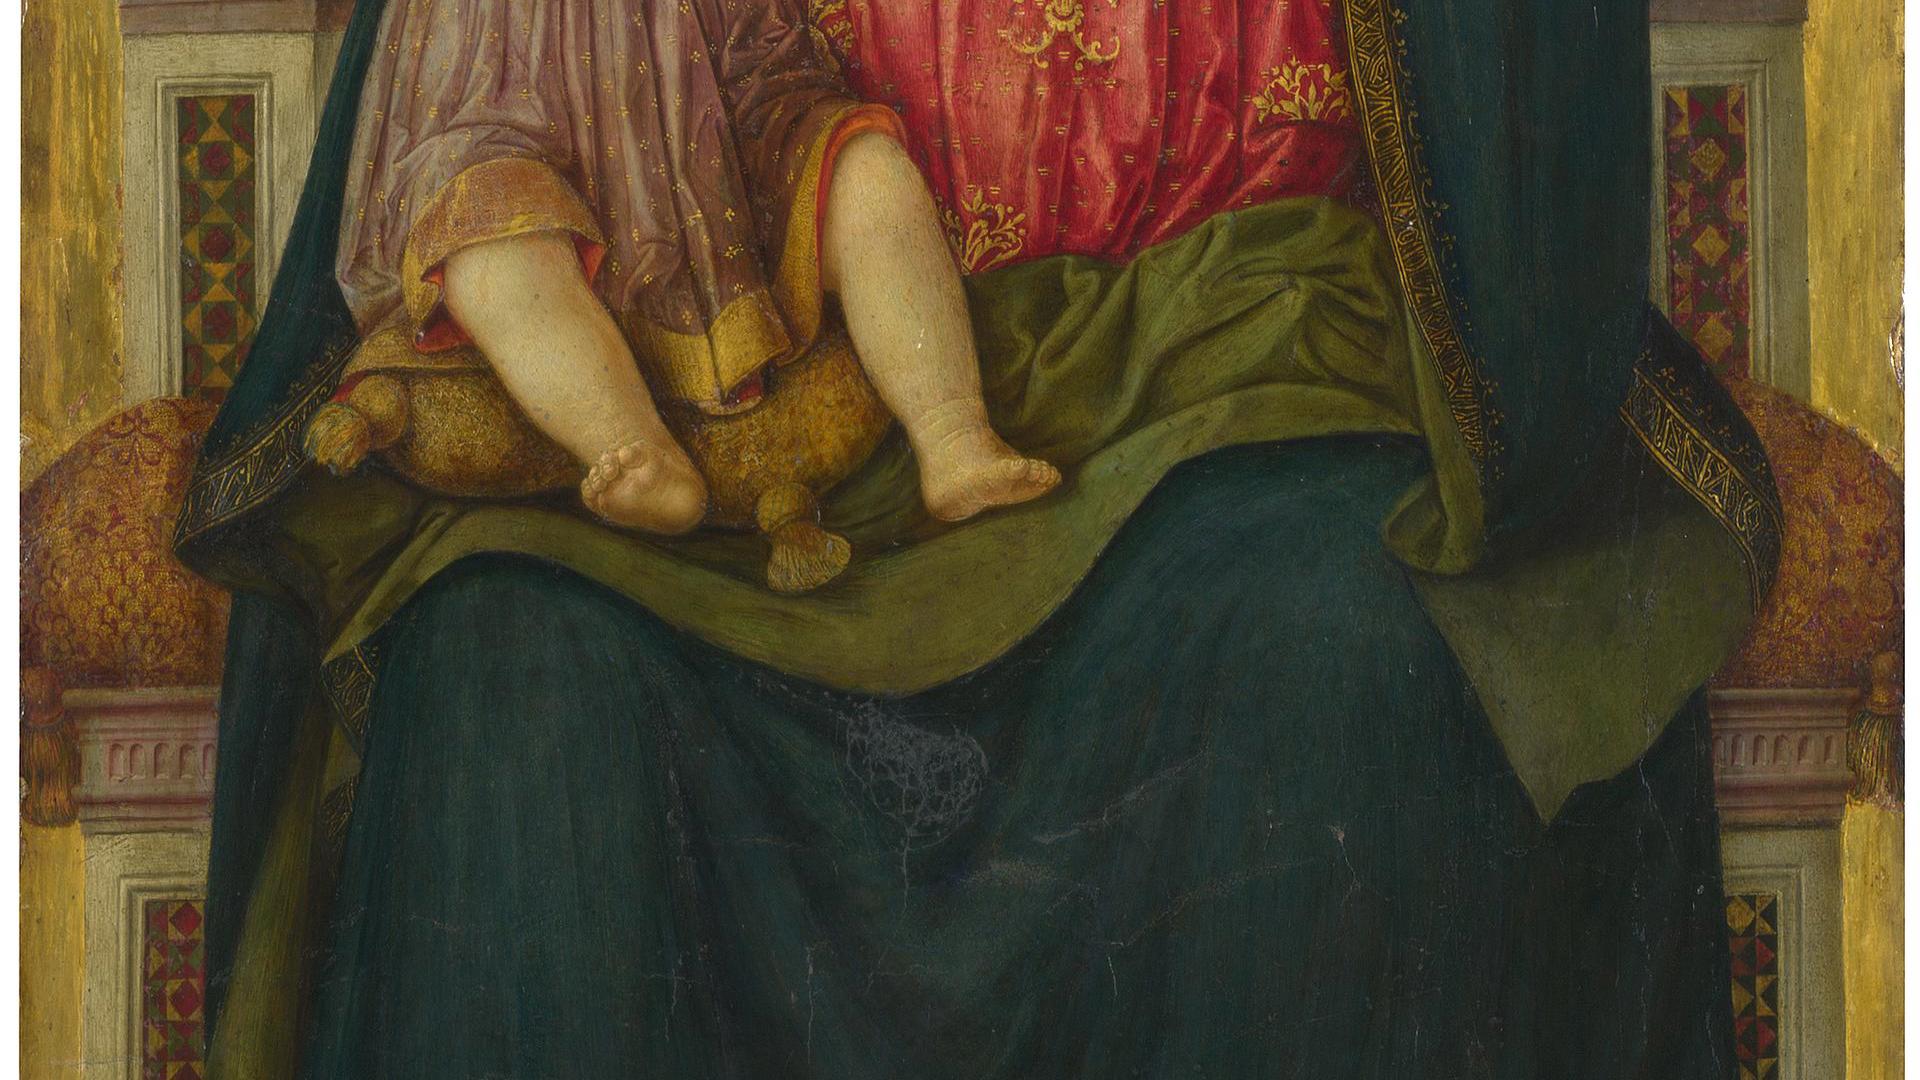 The Virgin and Child by Benvenuto di Giovanni